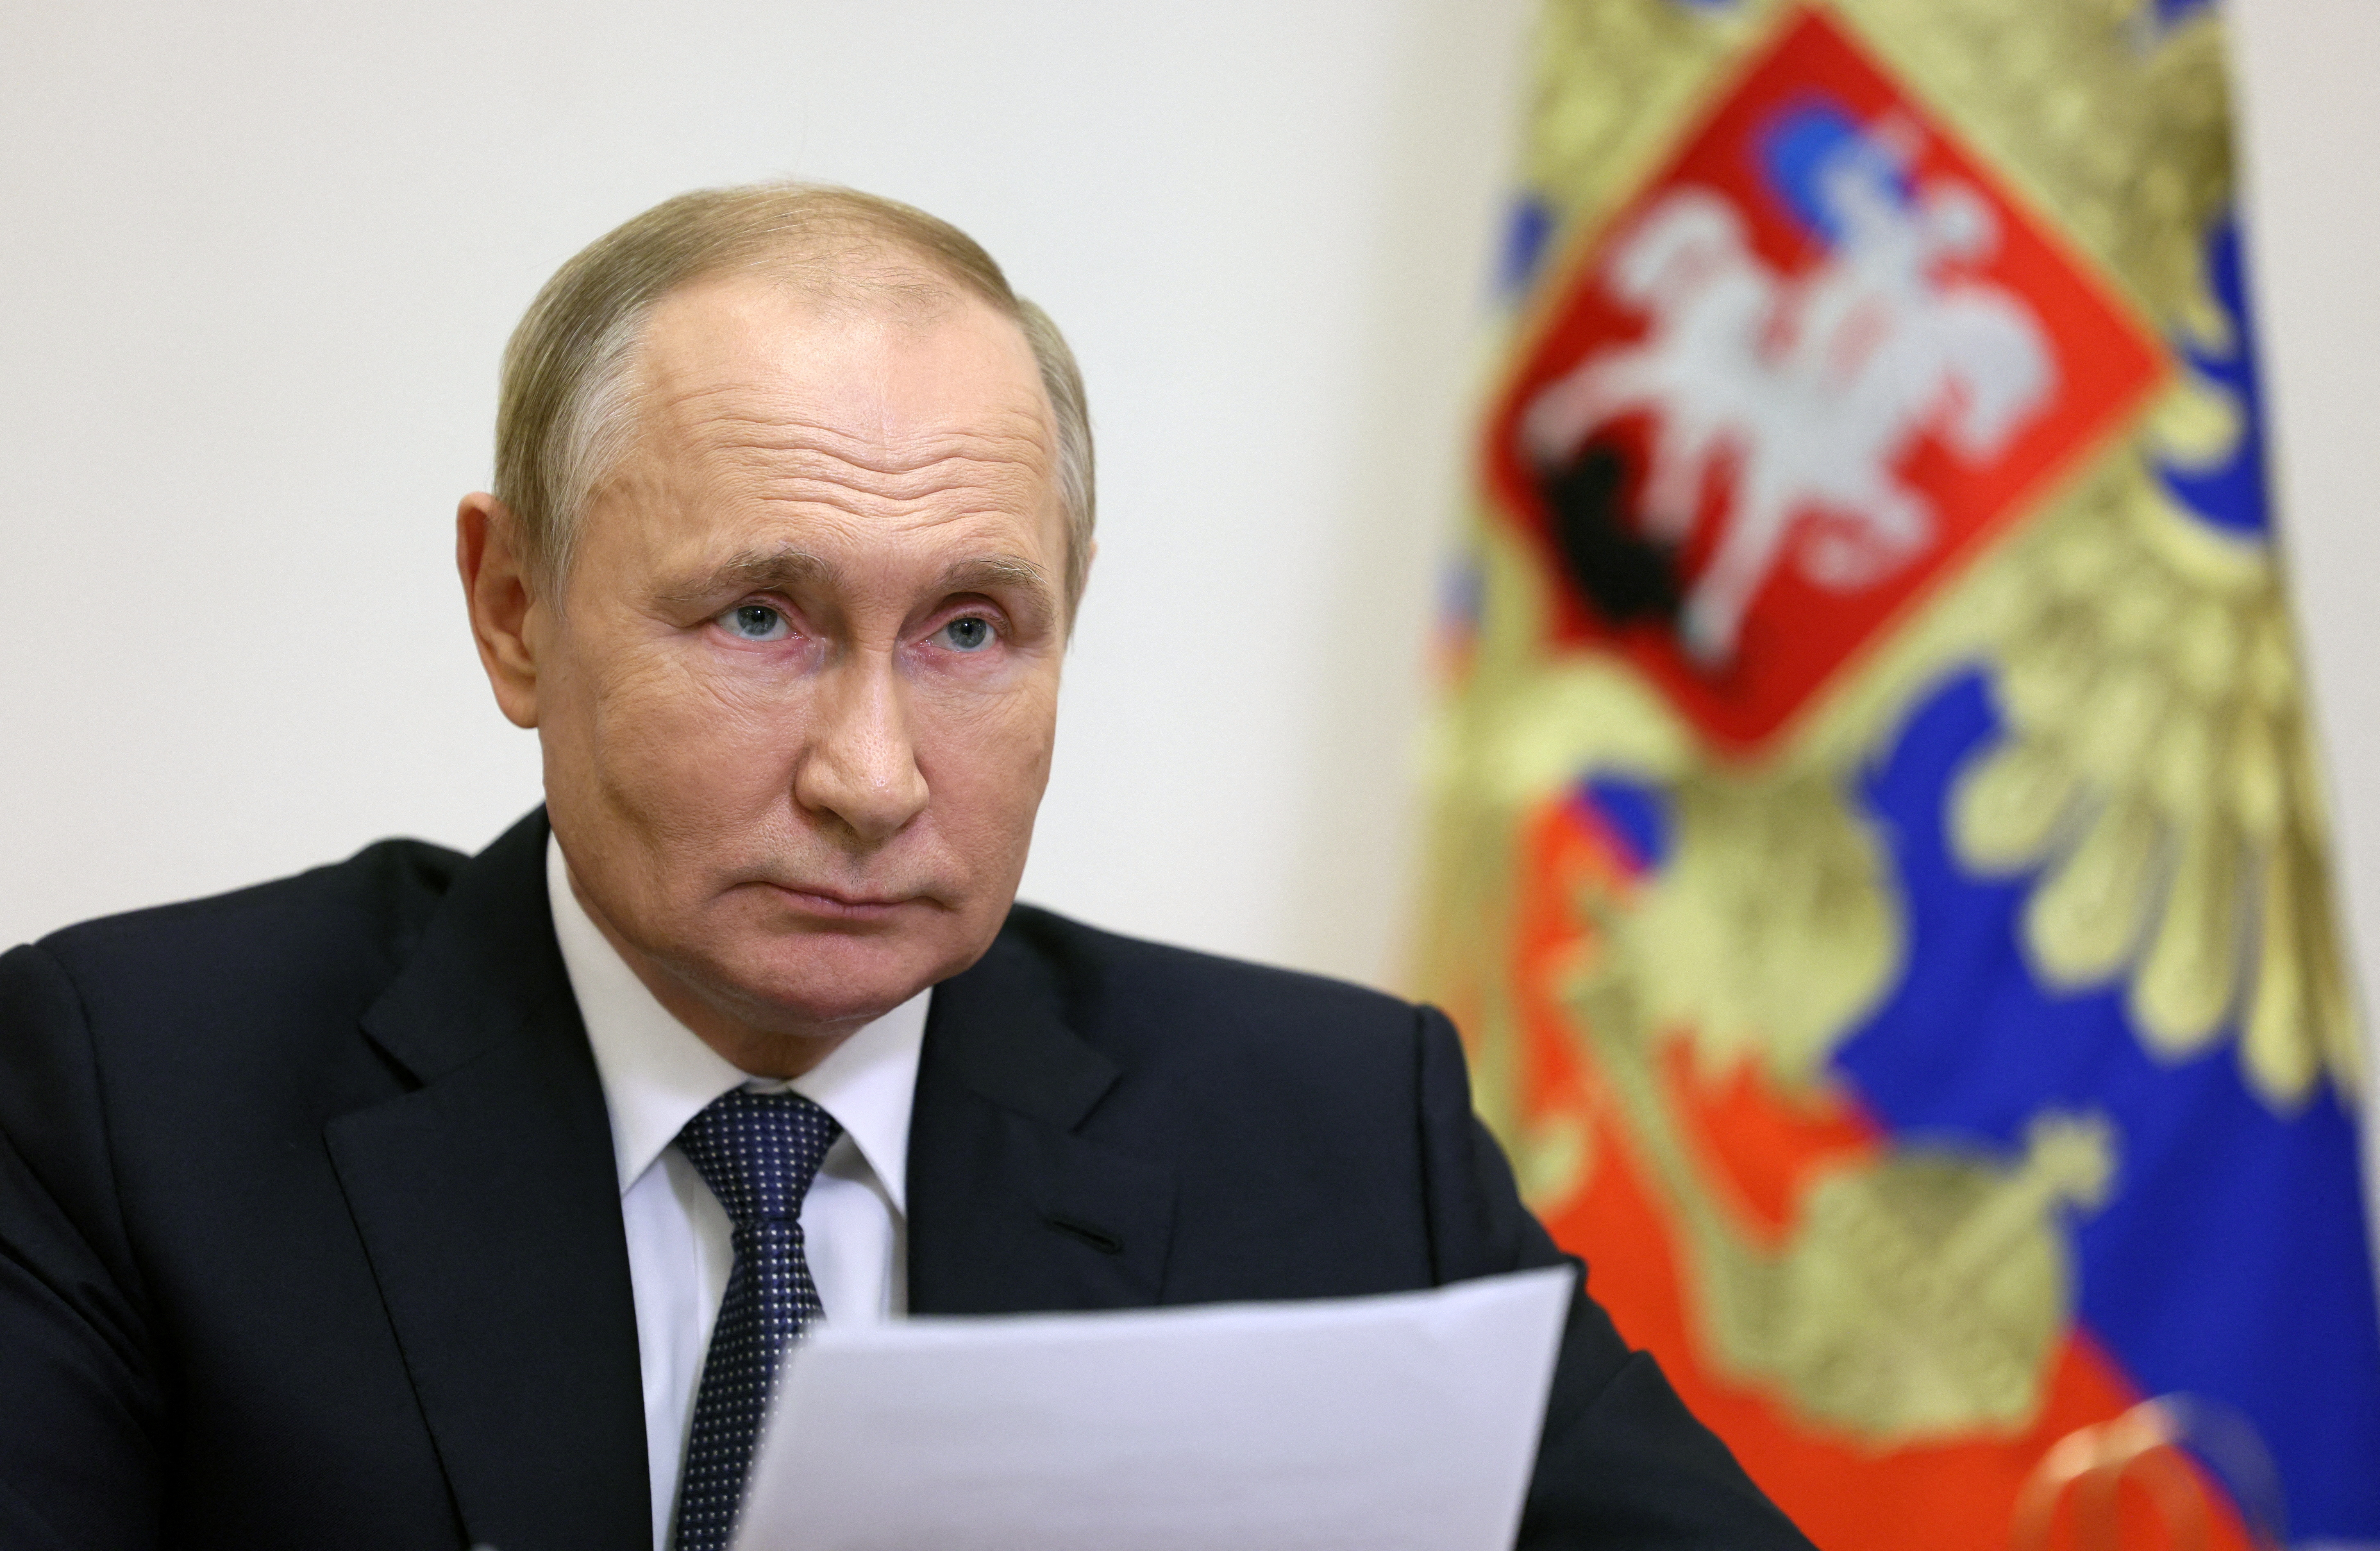 Vladimir Putin, presidente de Rusia (Sputnik/Gavriil Grigorov/Pool via REUTERS)